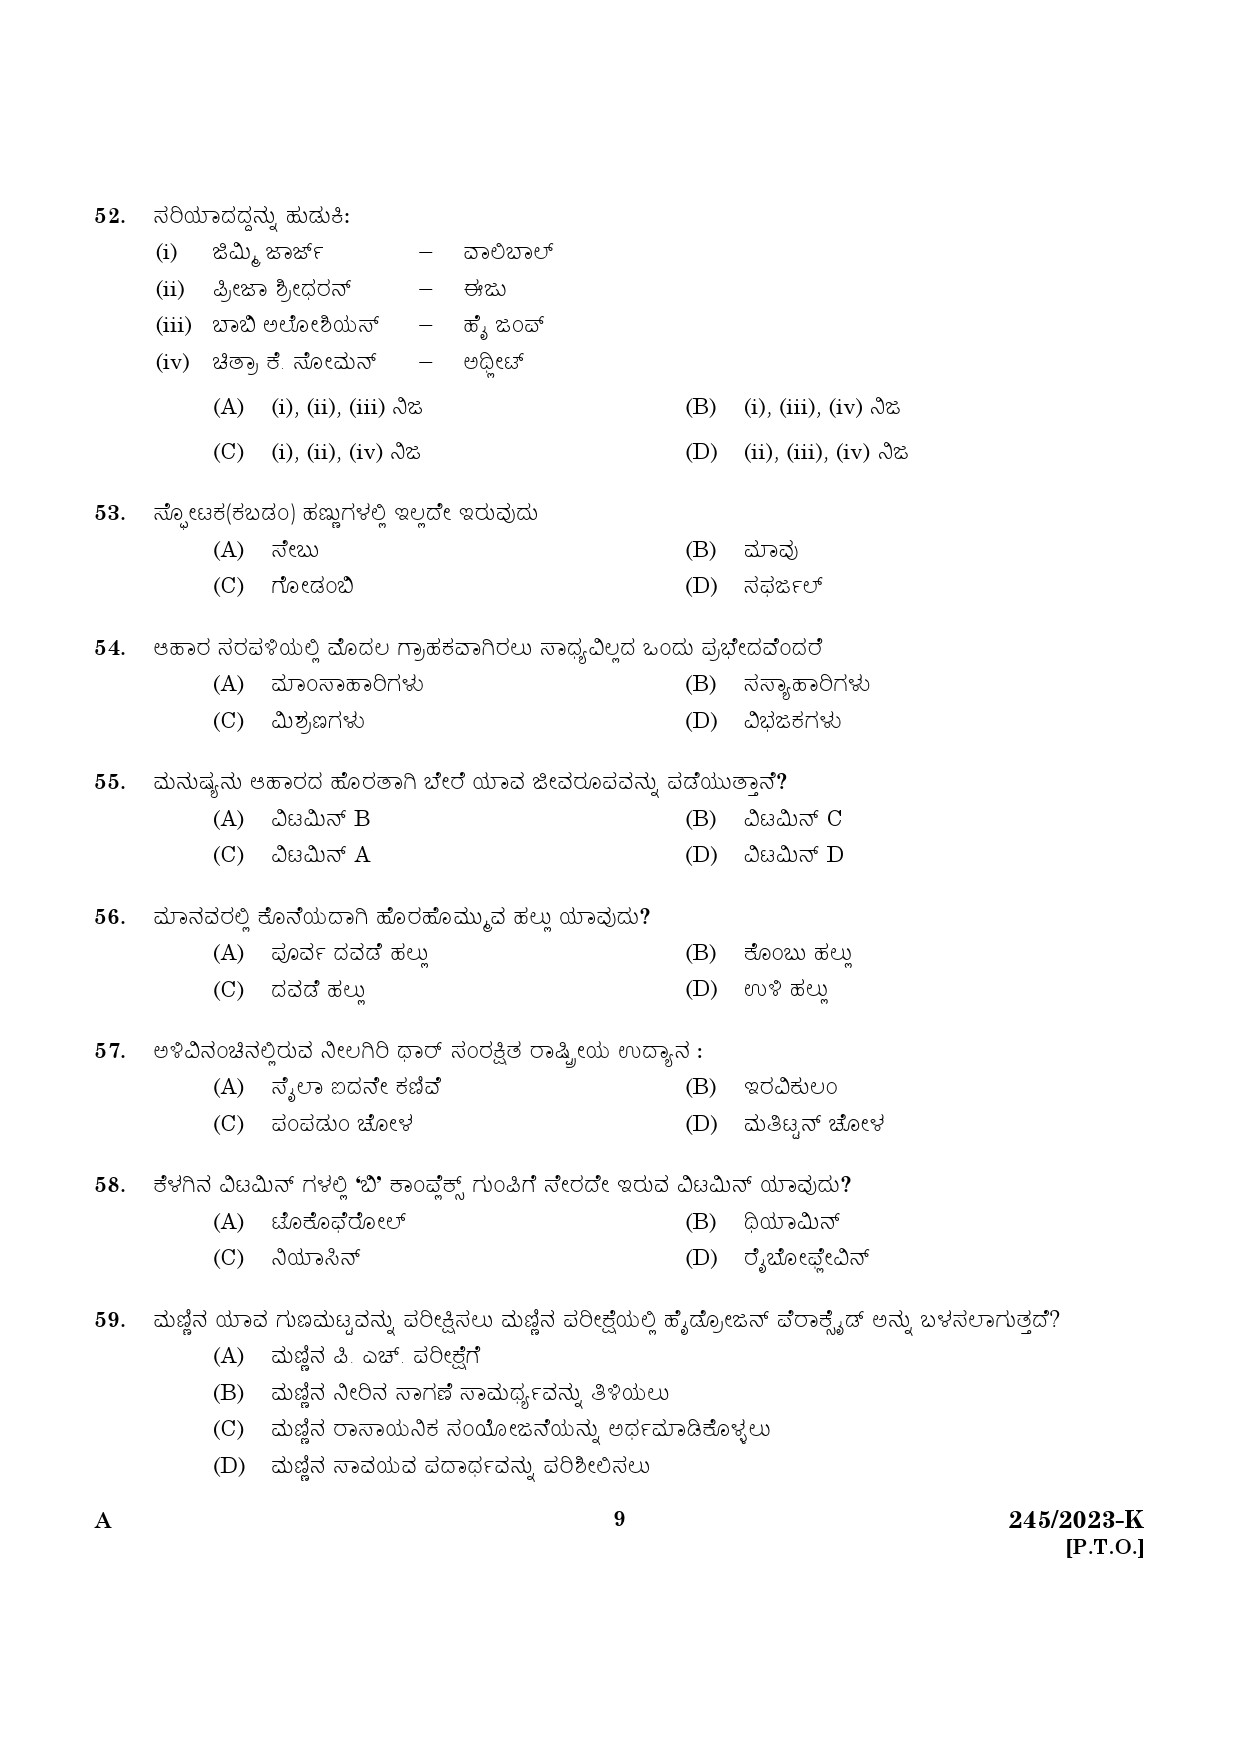 KPSC LGS Kannada Exam 2023 Code 2452023 K 7